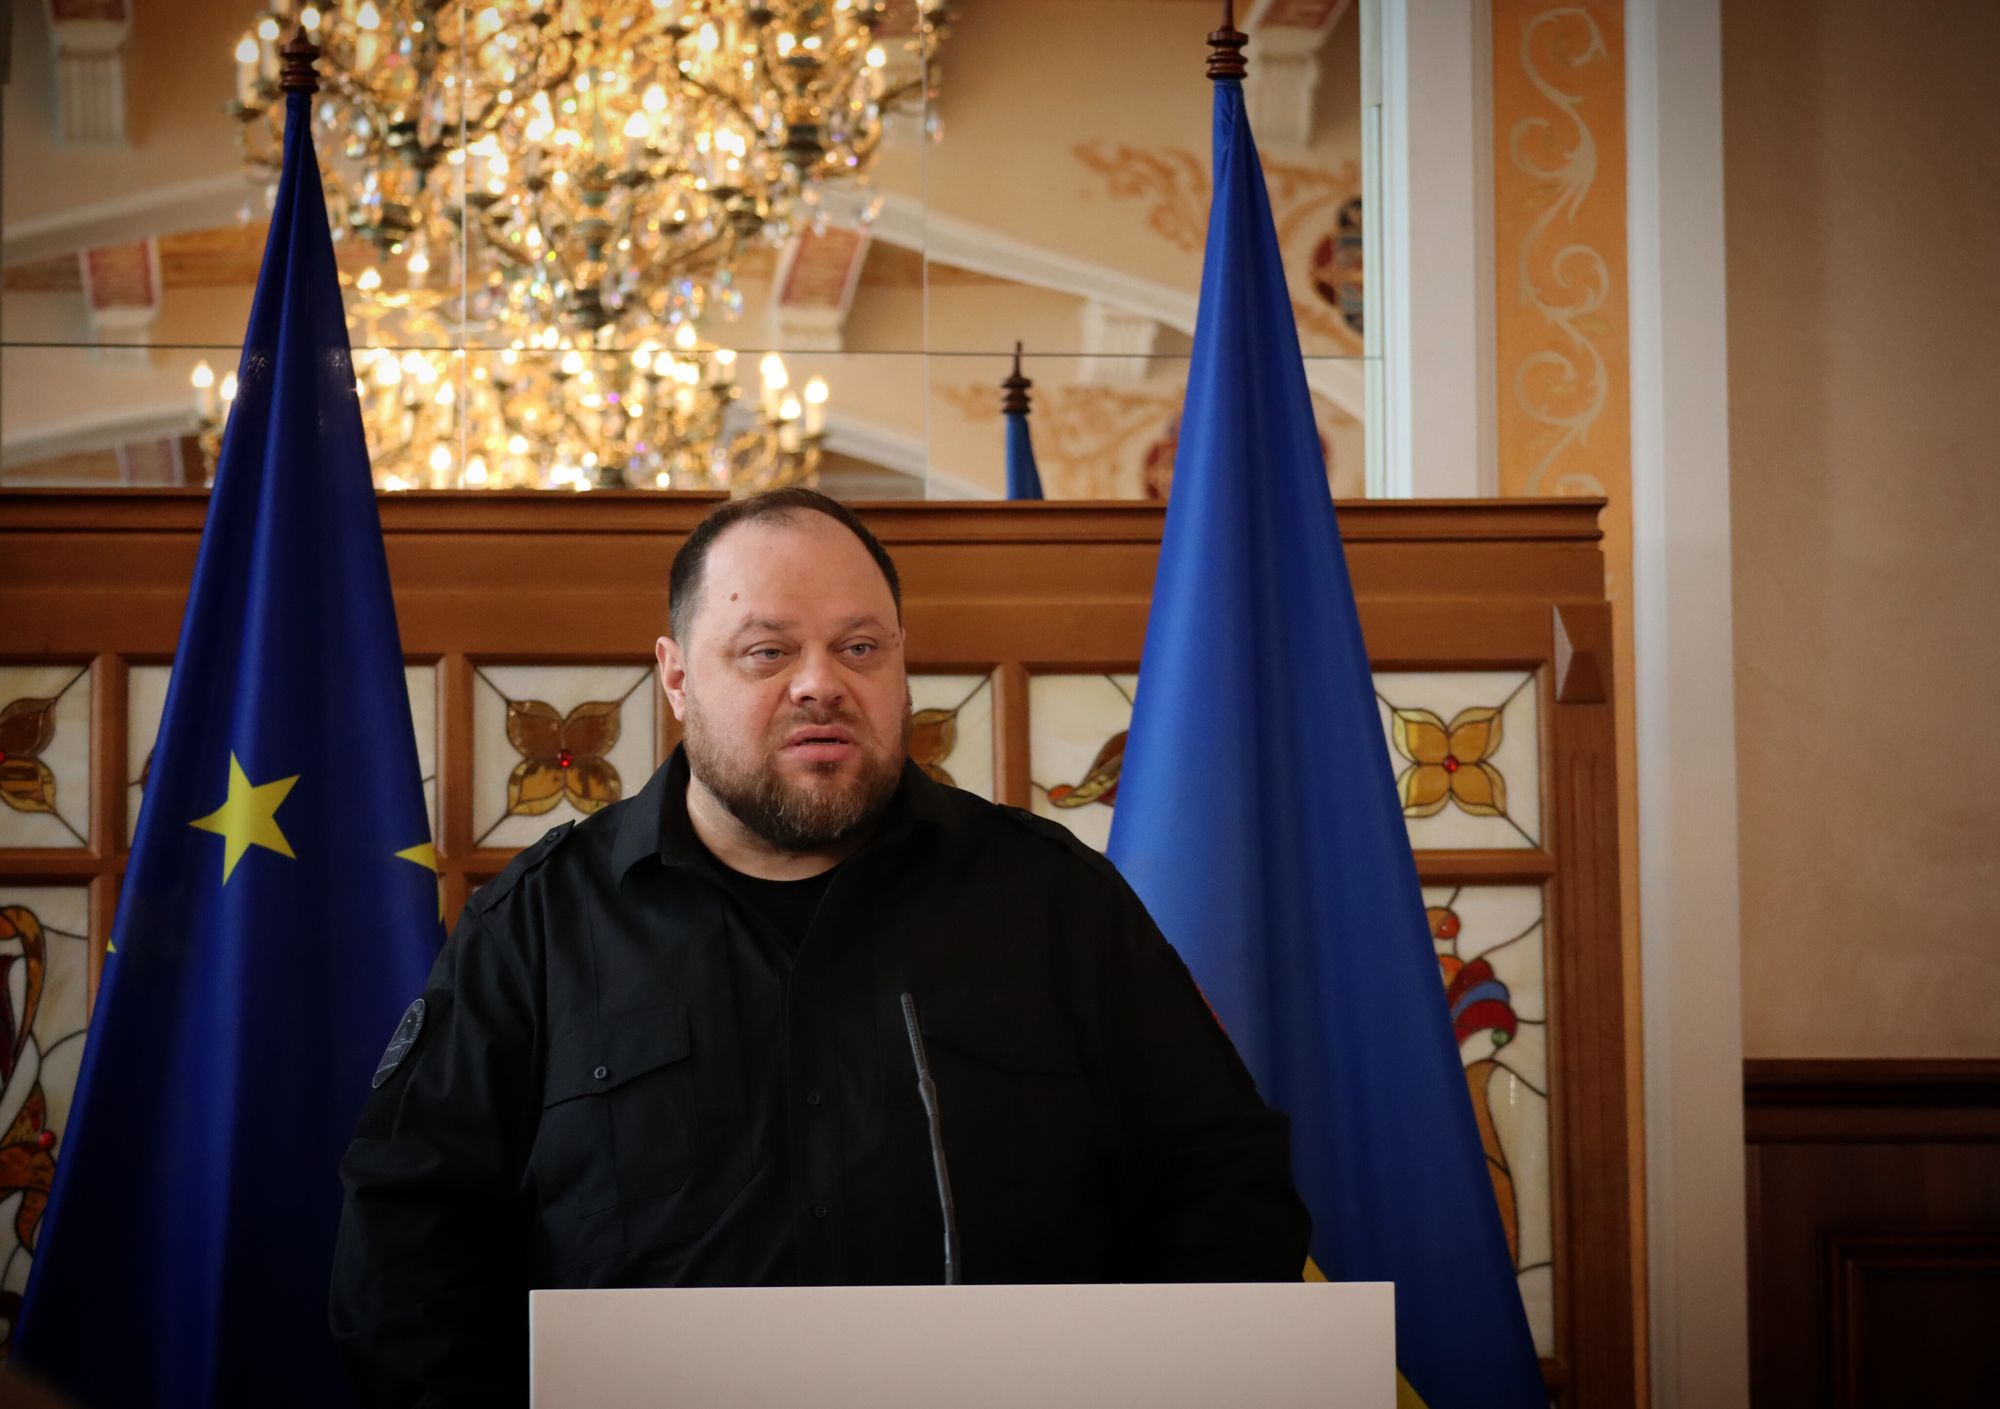 Parliament speaker dismisses Putin's claims on Zelensky's legitimacy